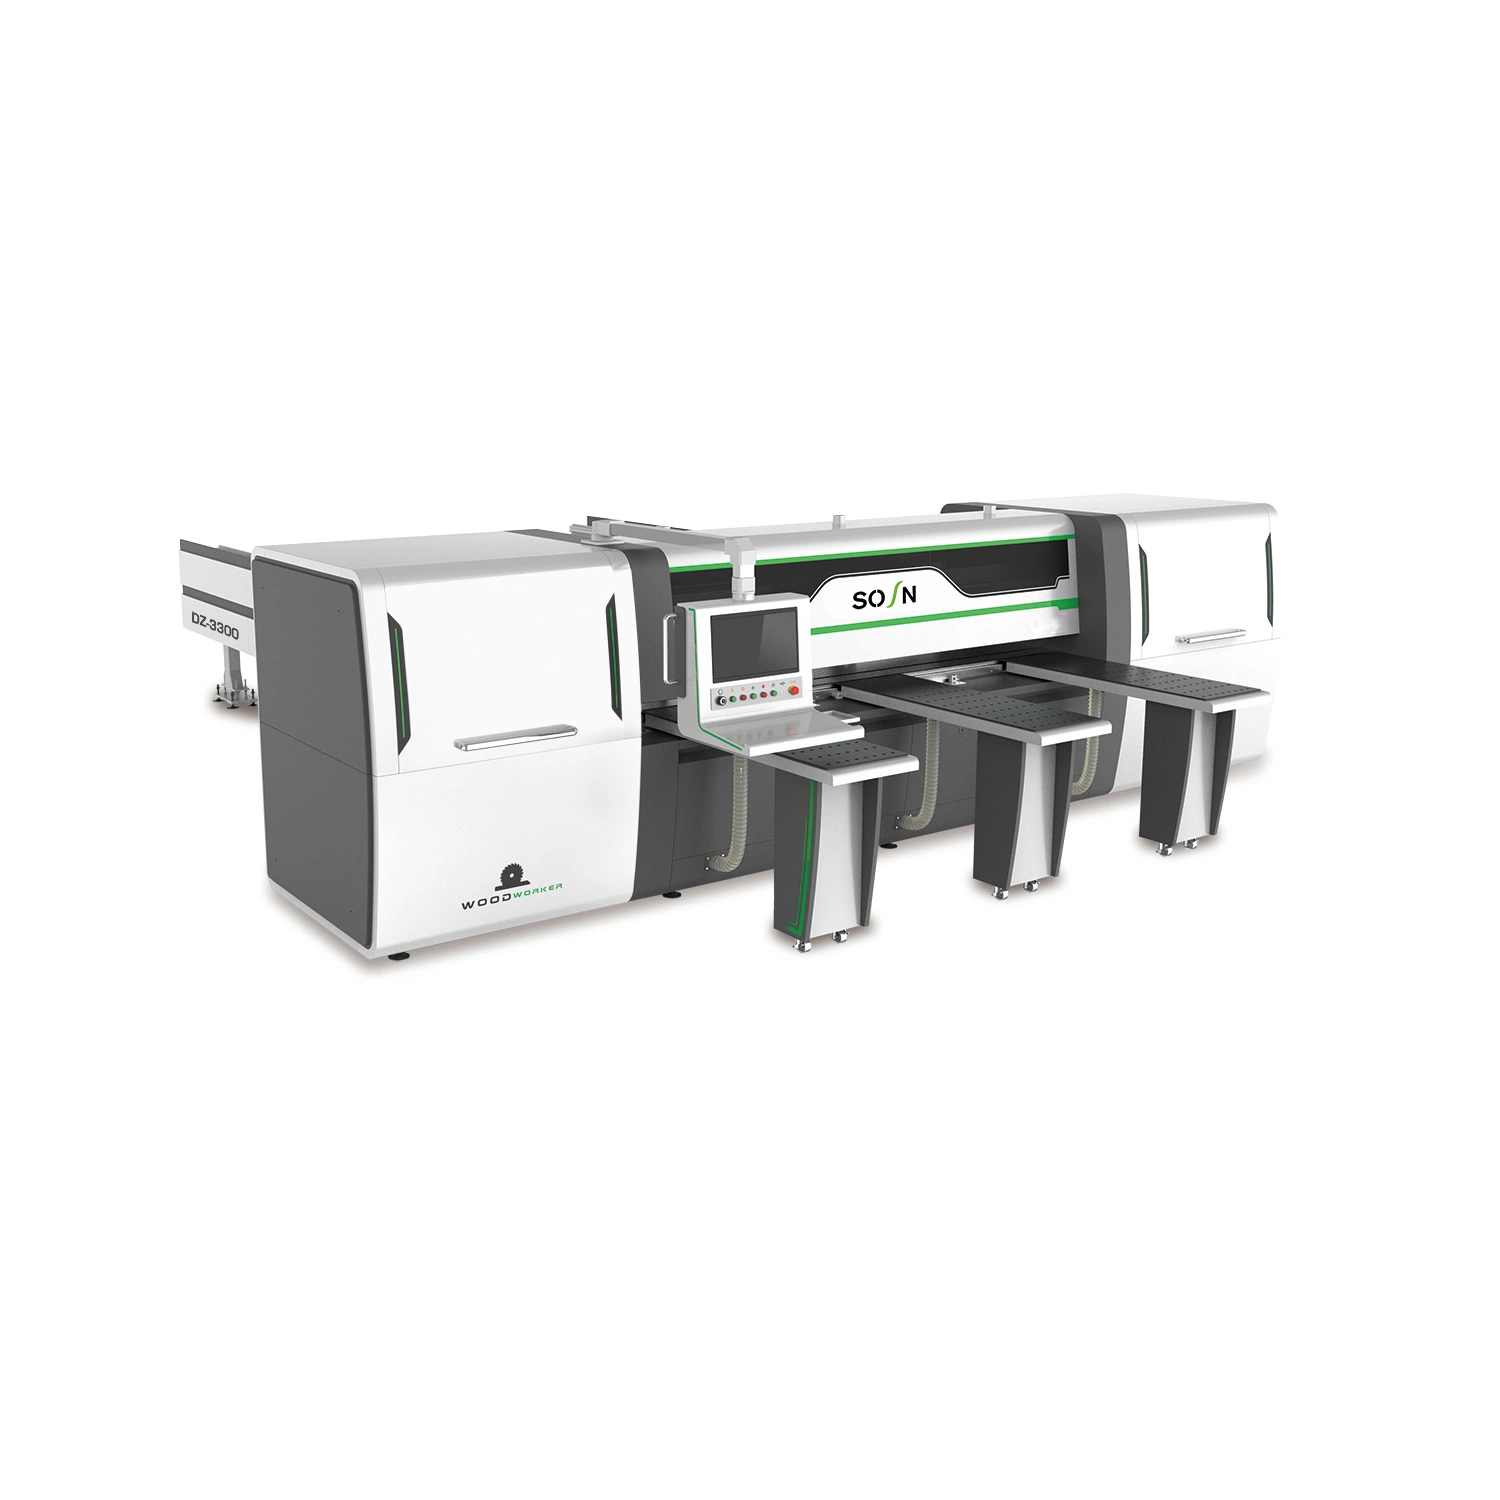 Holzbearbeitung CNC-Beam Saw Computer Panel Saw Schneidemaschine